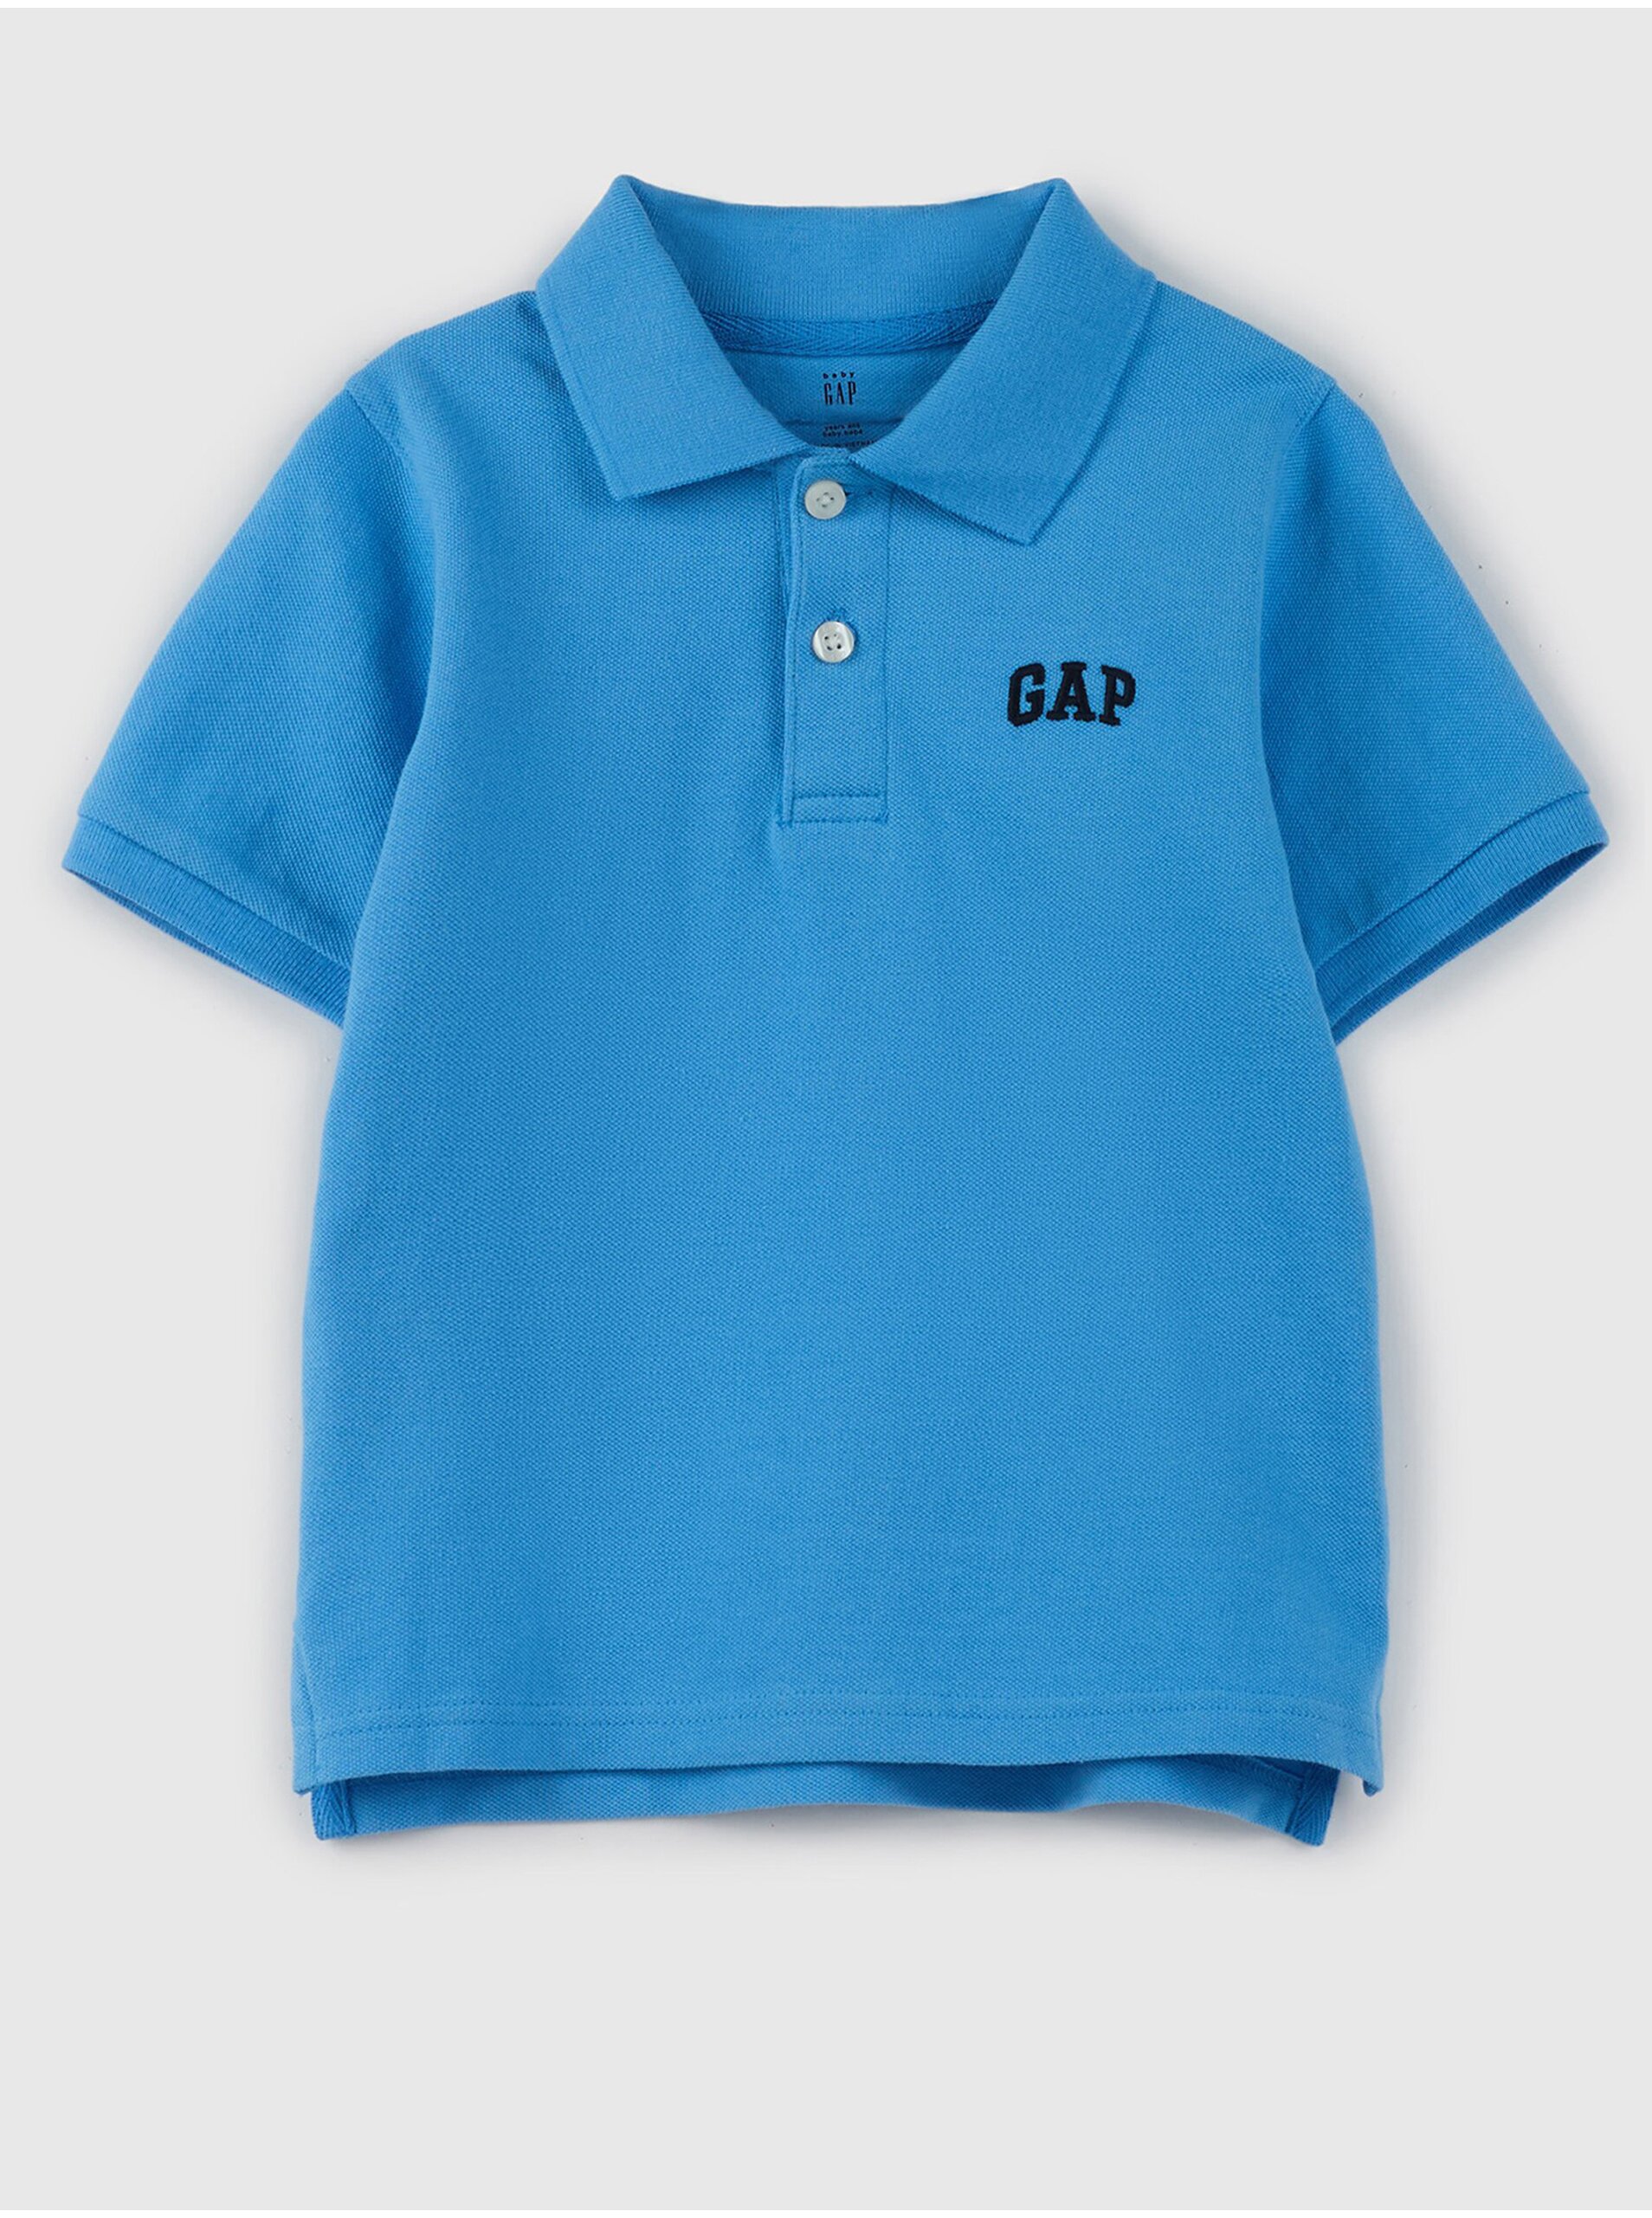 Lacno Modré chlapčenské polo tričko s logom GAP